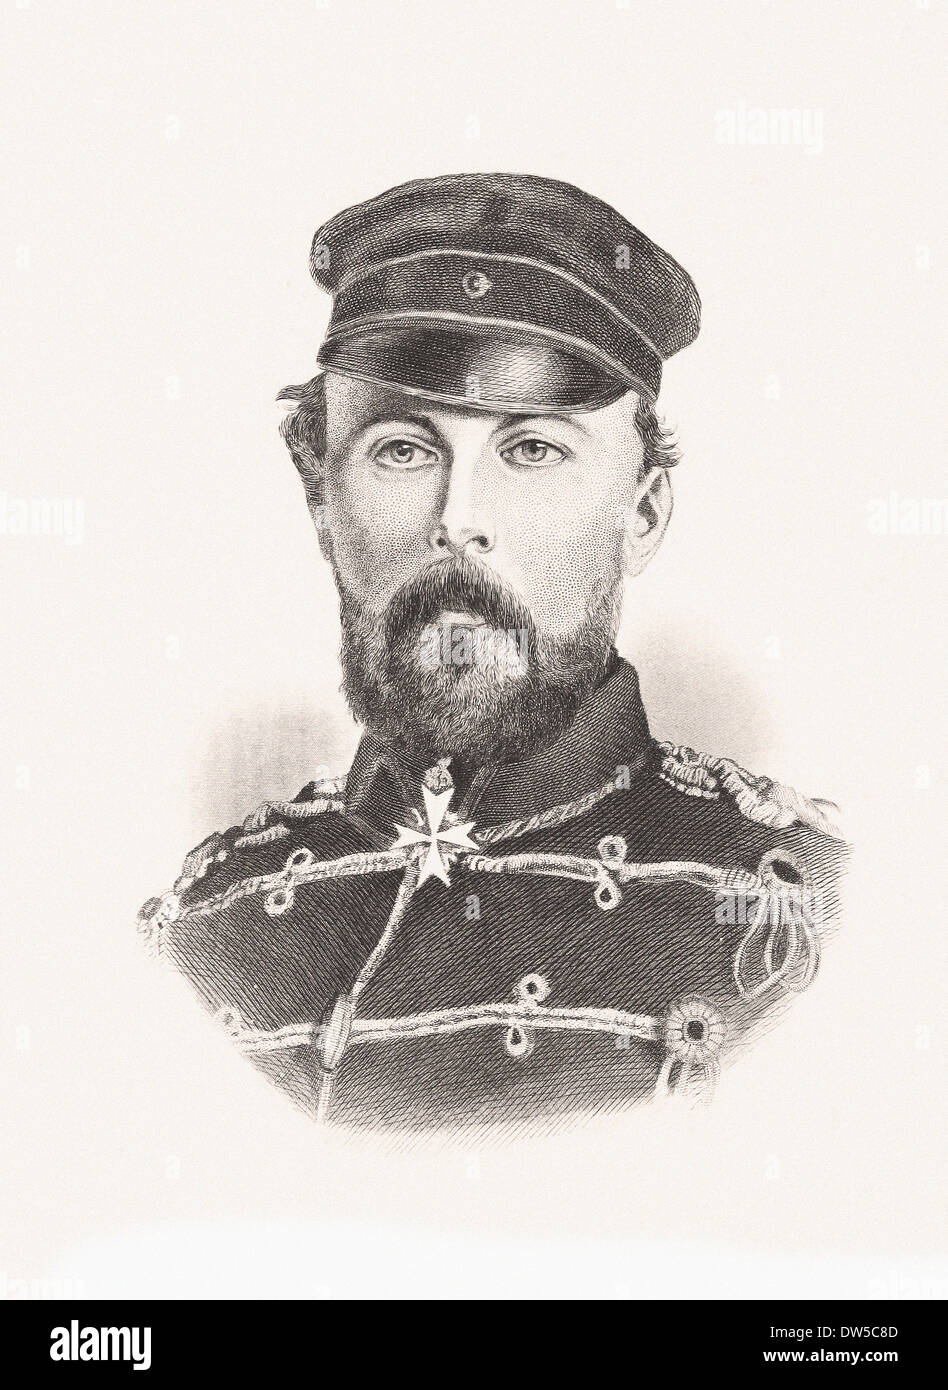 Porträt von Prinz Frederick Charles - Gravur XIX Jahrhundert Stockfoto